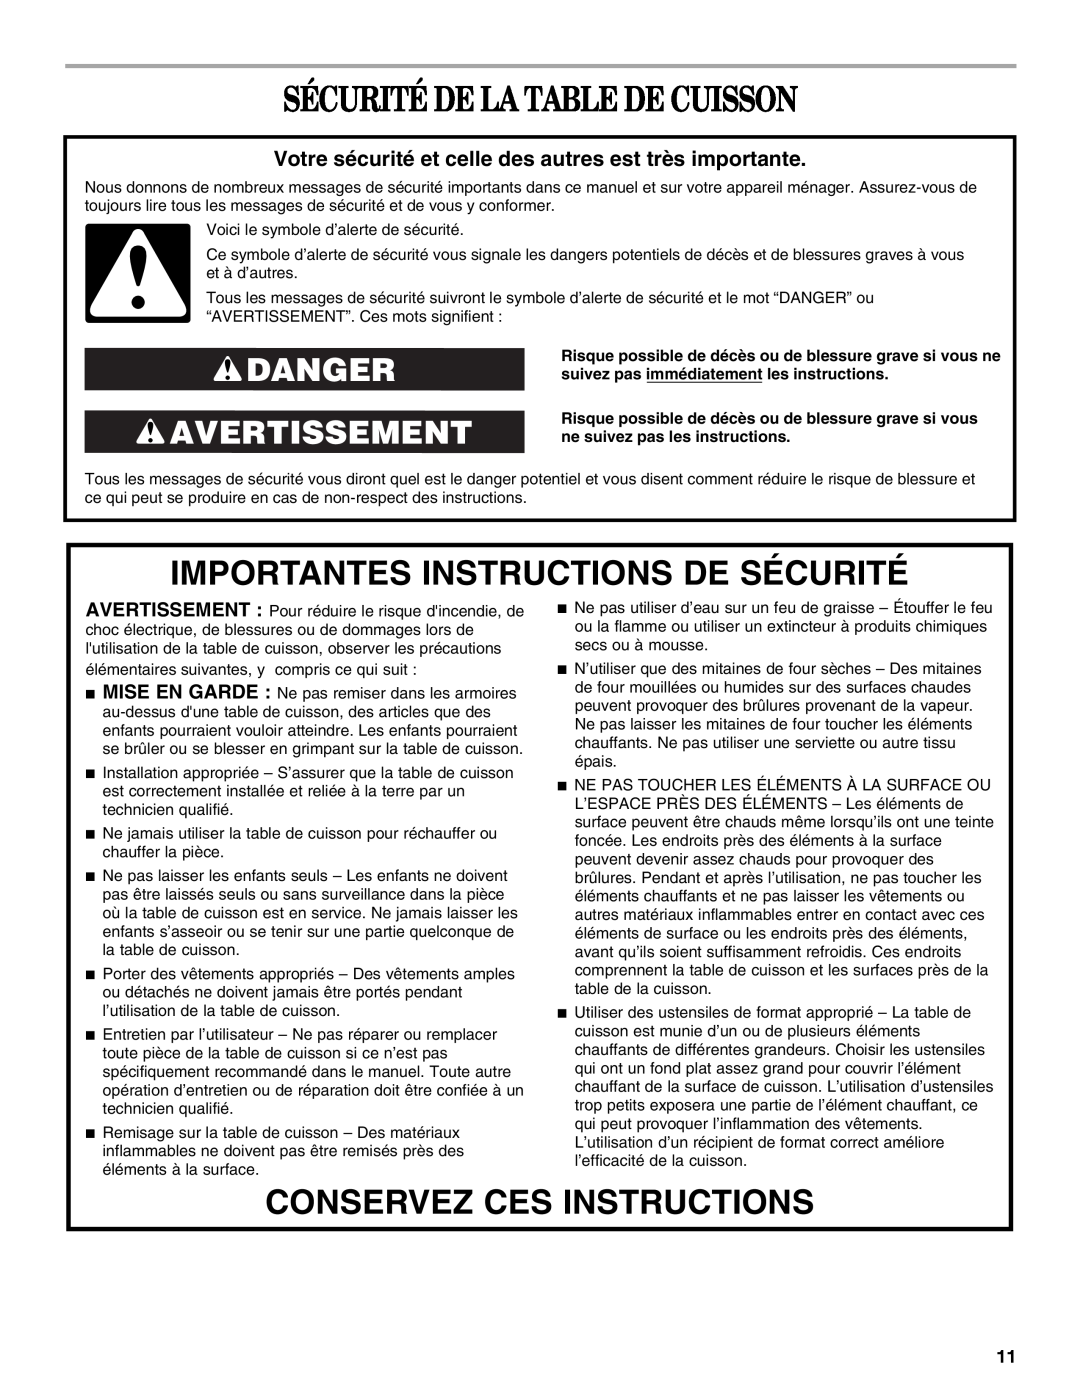 Whirlpool GCI3061XB Sécurité De La Table De Cuisson, Importantes Instructions De Sécurité, Conservez Ces Instructions 